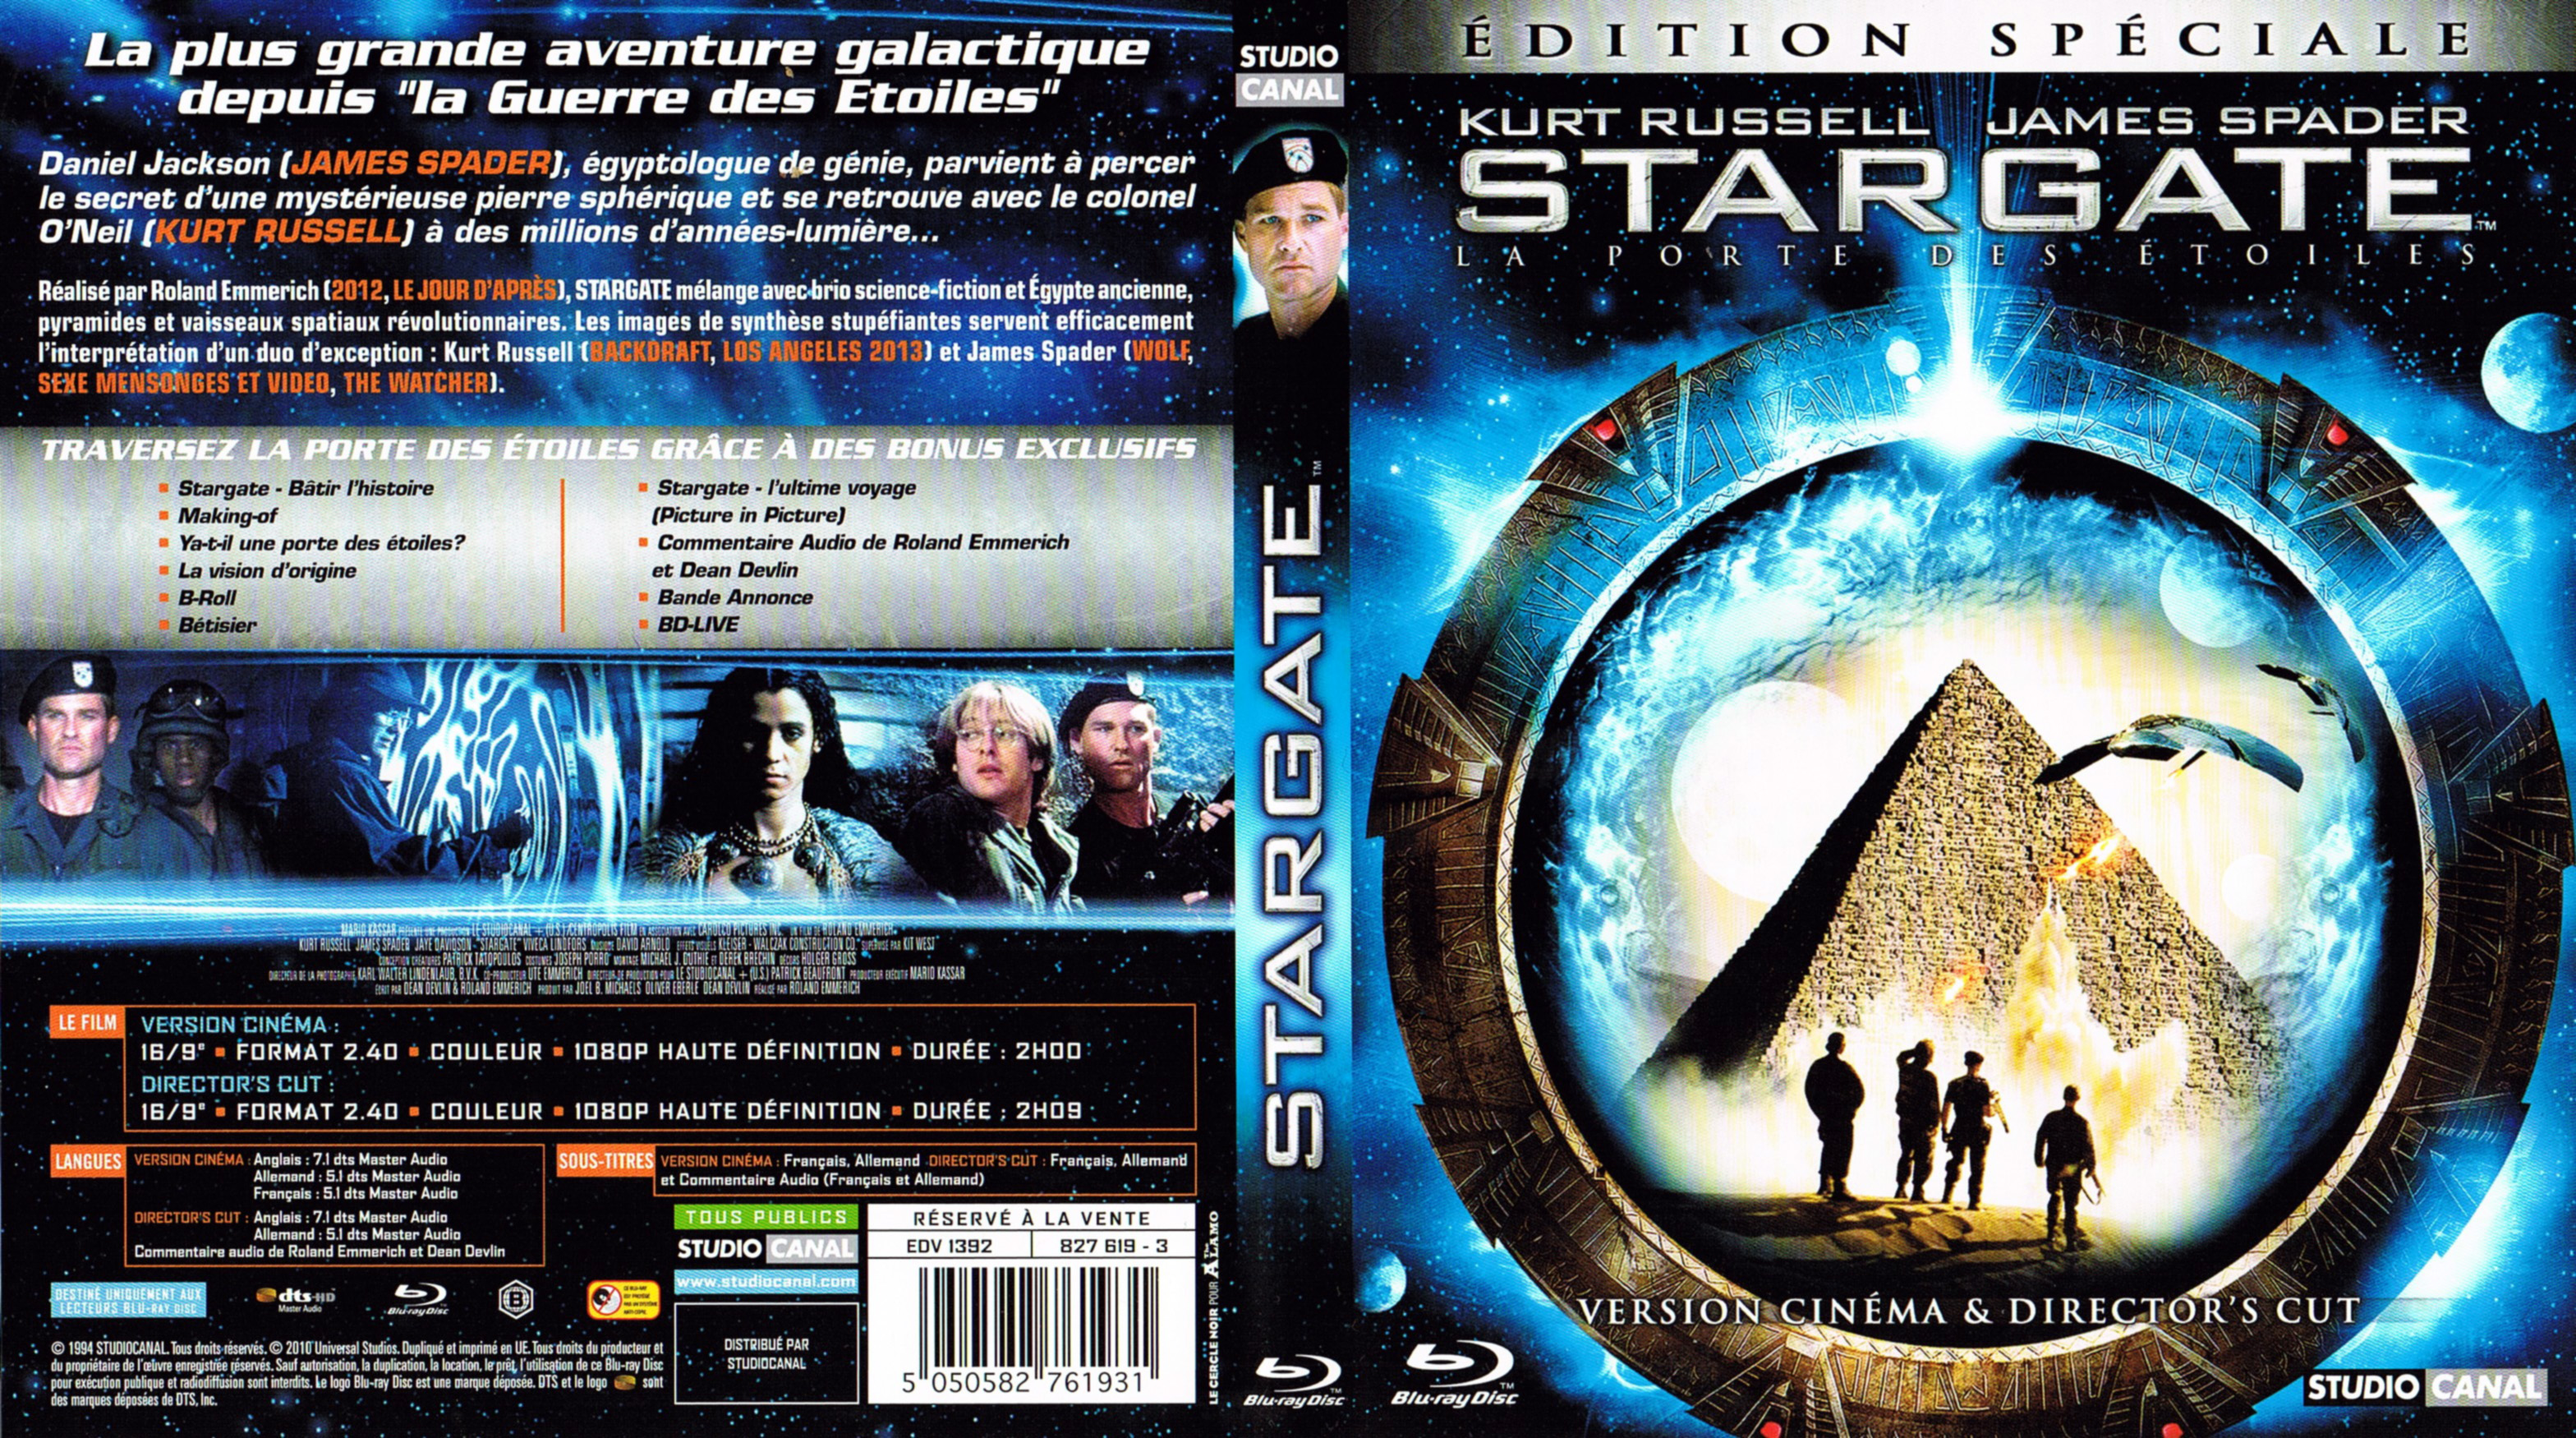 Jaquette DVD Stargate la porte des toiles (BLU-RAY) v2